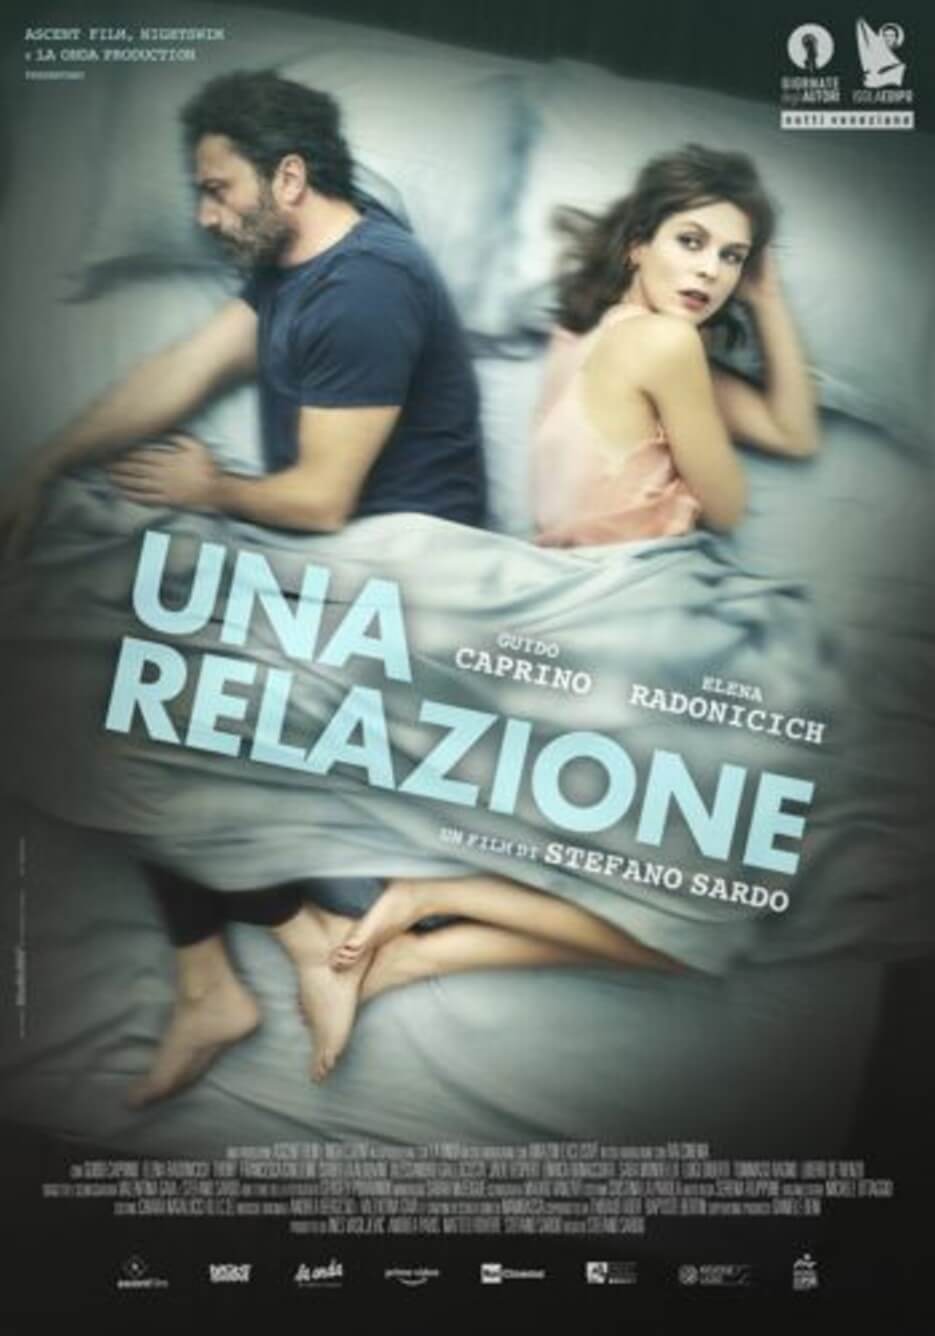 Promo poster for Una Realizone